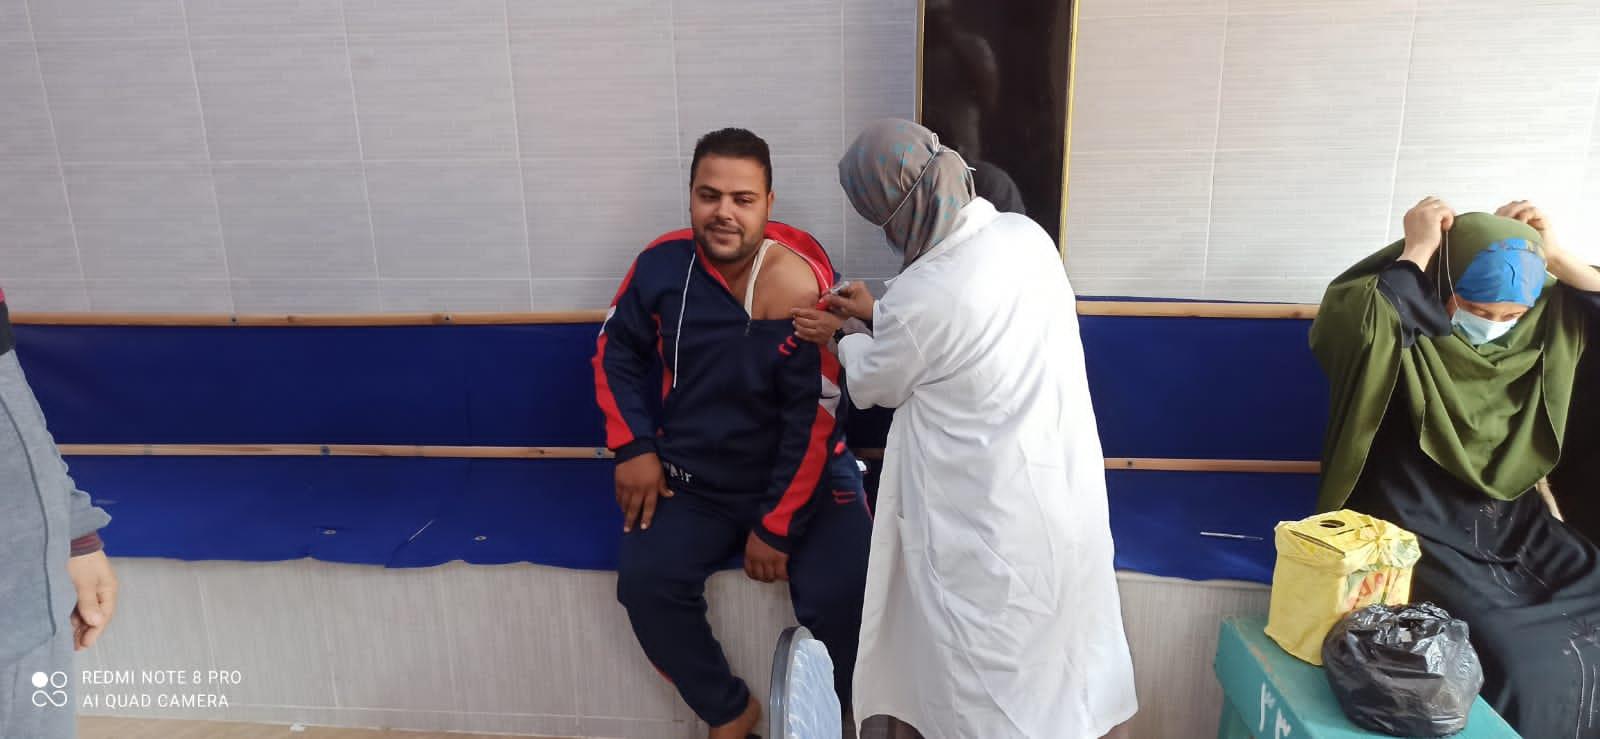 انتشار مكثف للفرق الطبية لتطعيم المصلين امام المساجد  بجميع قرى ومدن  الدقهلية. 